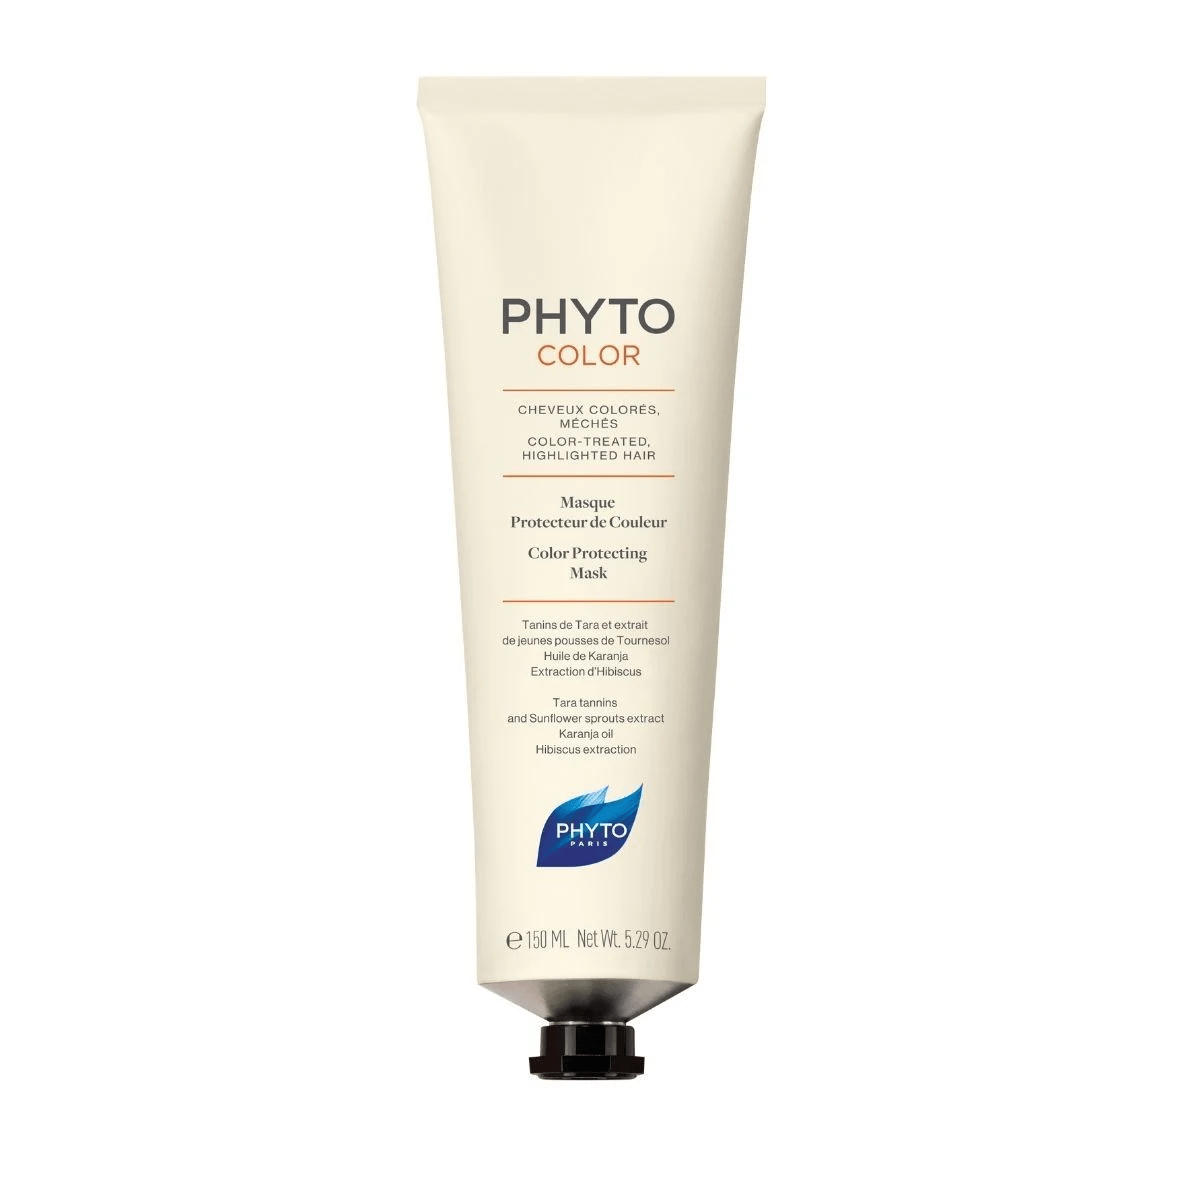 PHYTO Soins & Beauté Phytocolor (masque protecteur de couleur) 150ml